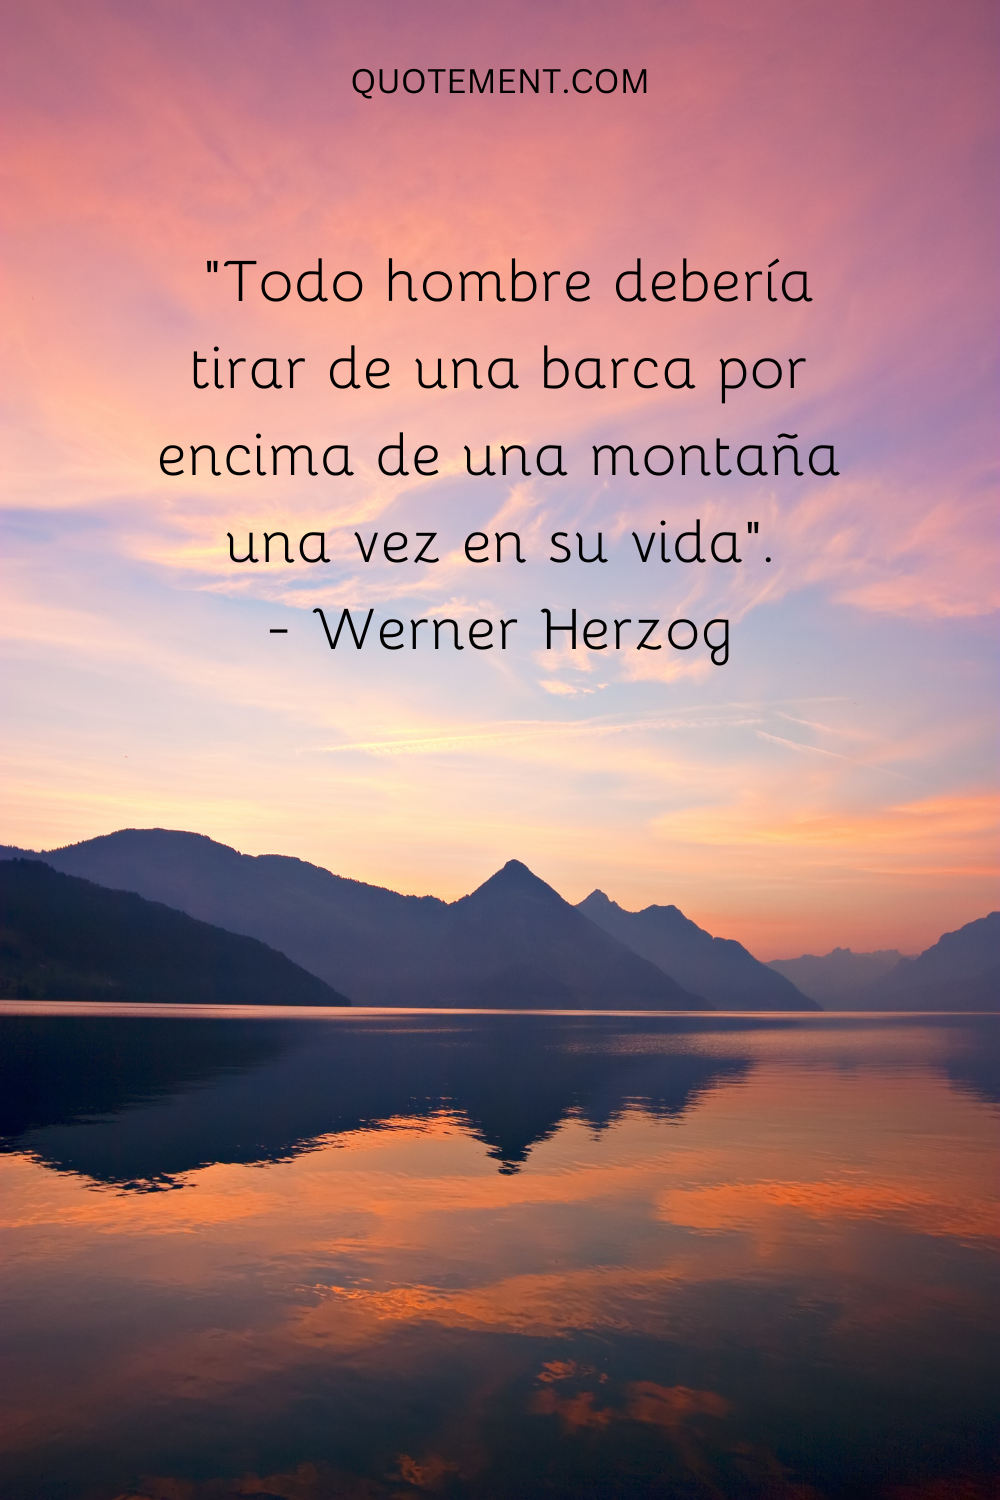 "Todo hombre debería tirar de un barco por encima de una montaña una vez en su vida". - Werner Herzog